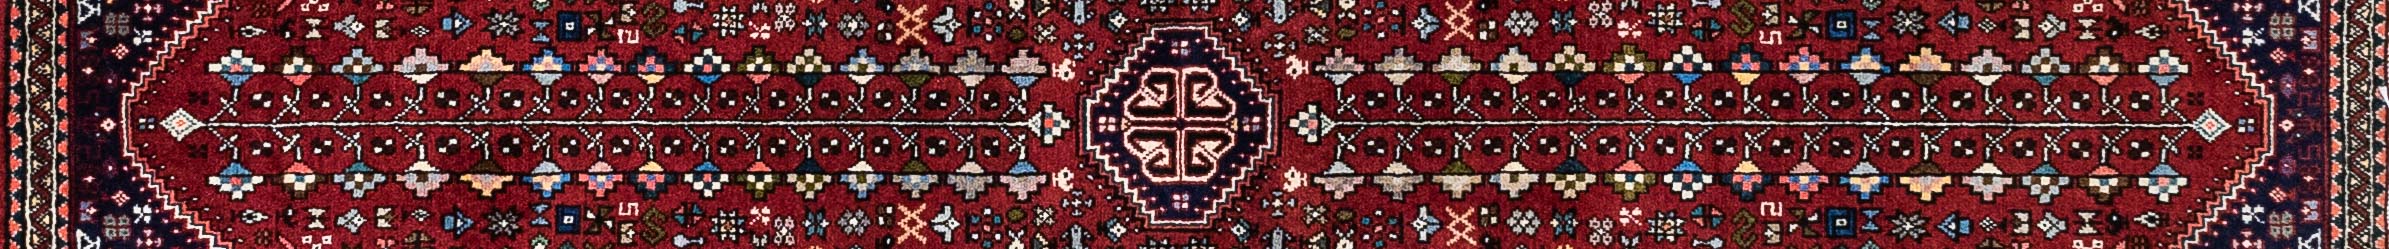 Abadeh Persian Carpet Rug N1Carpet Canada Montreal Tapis Persan 850